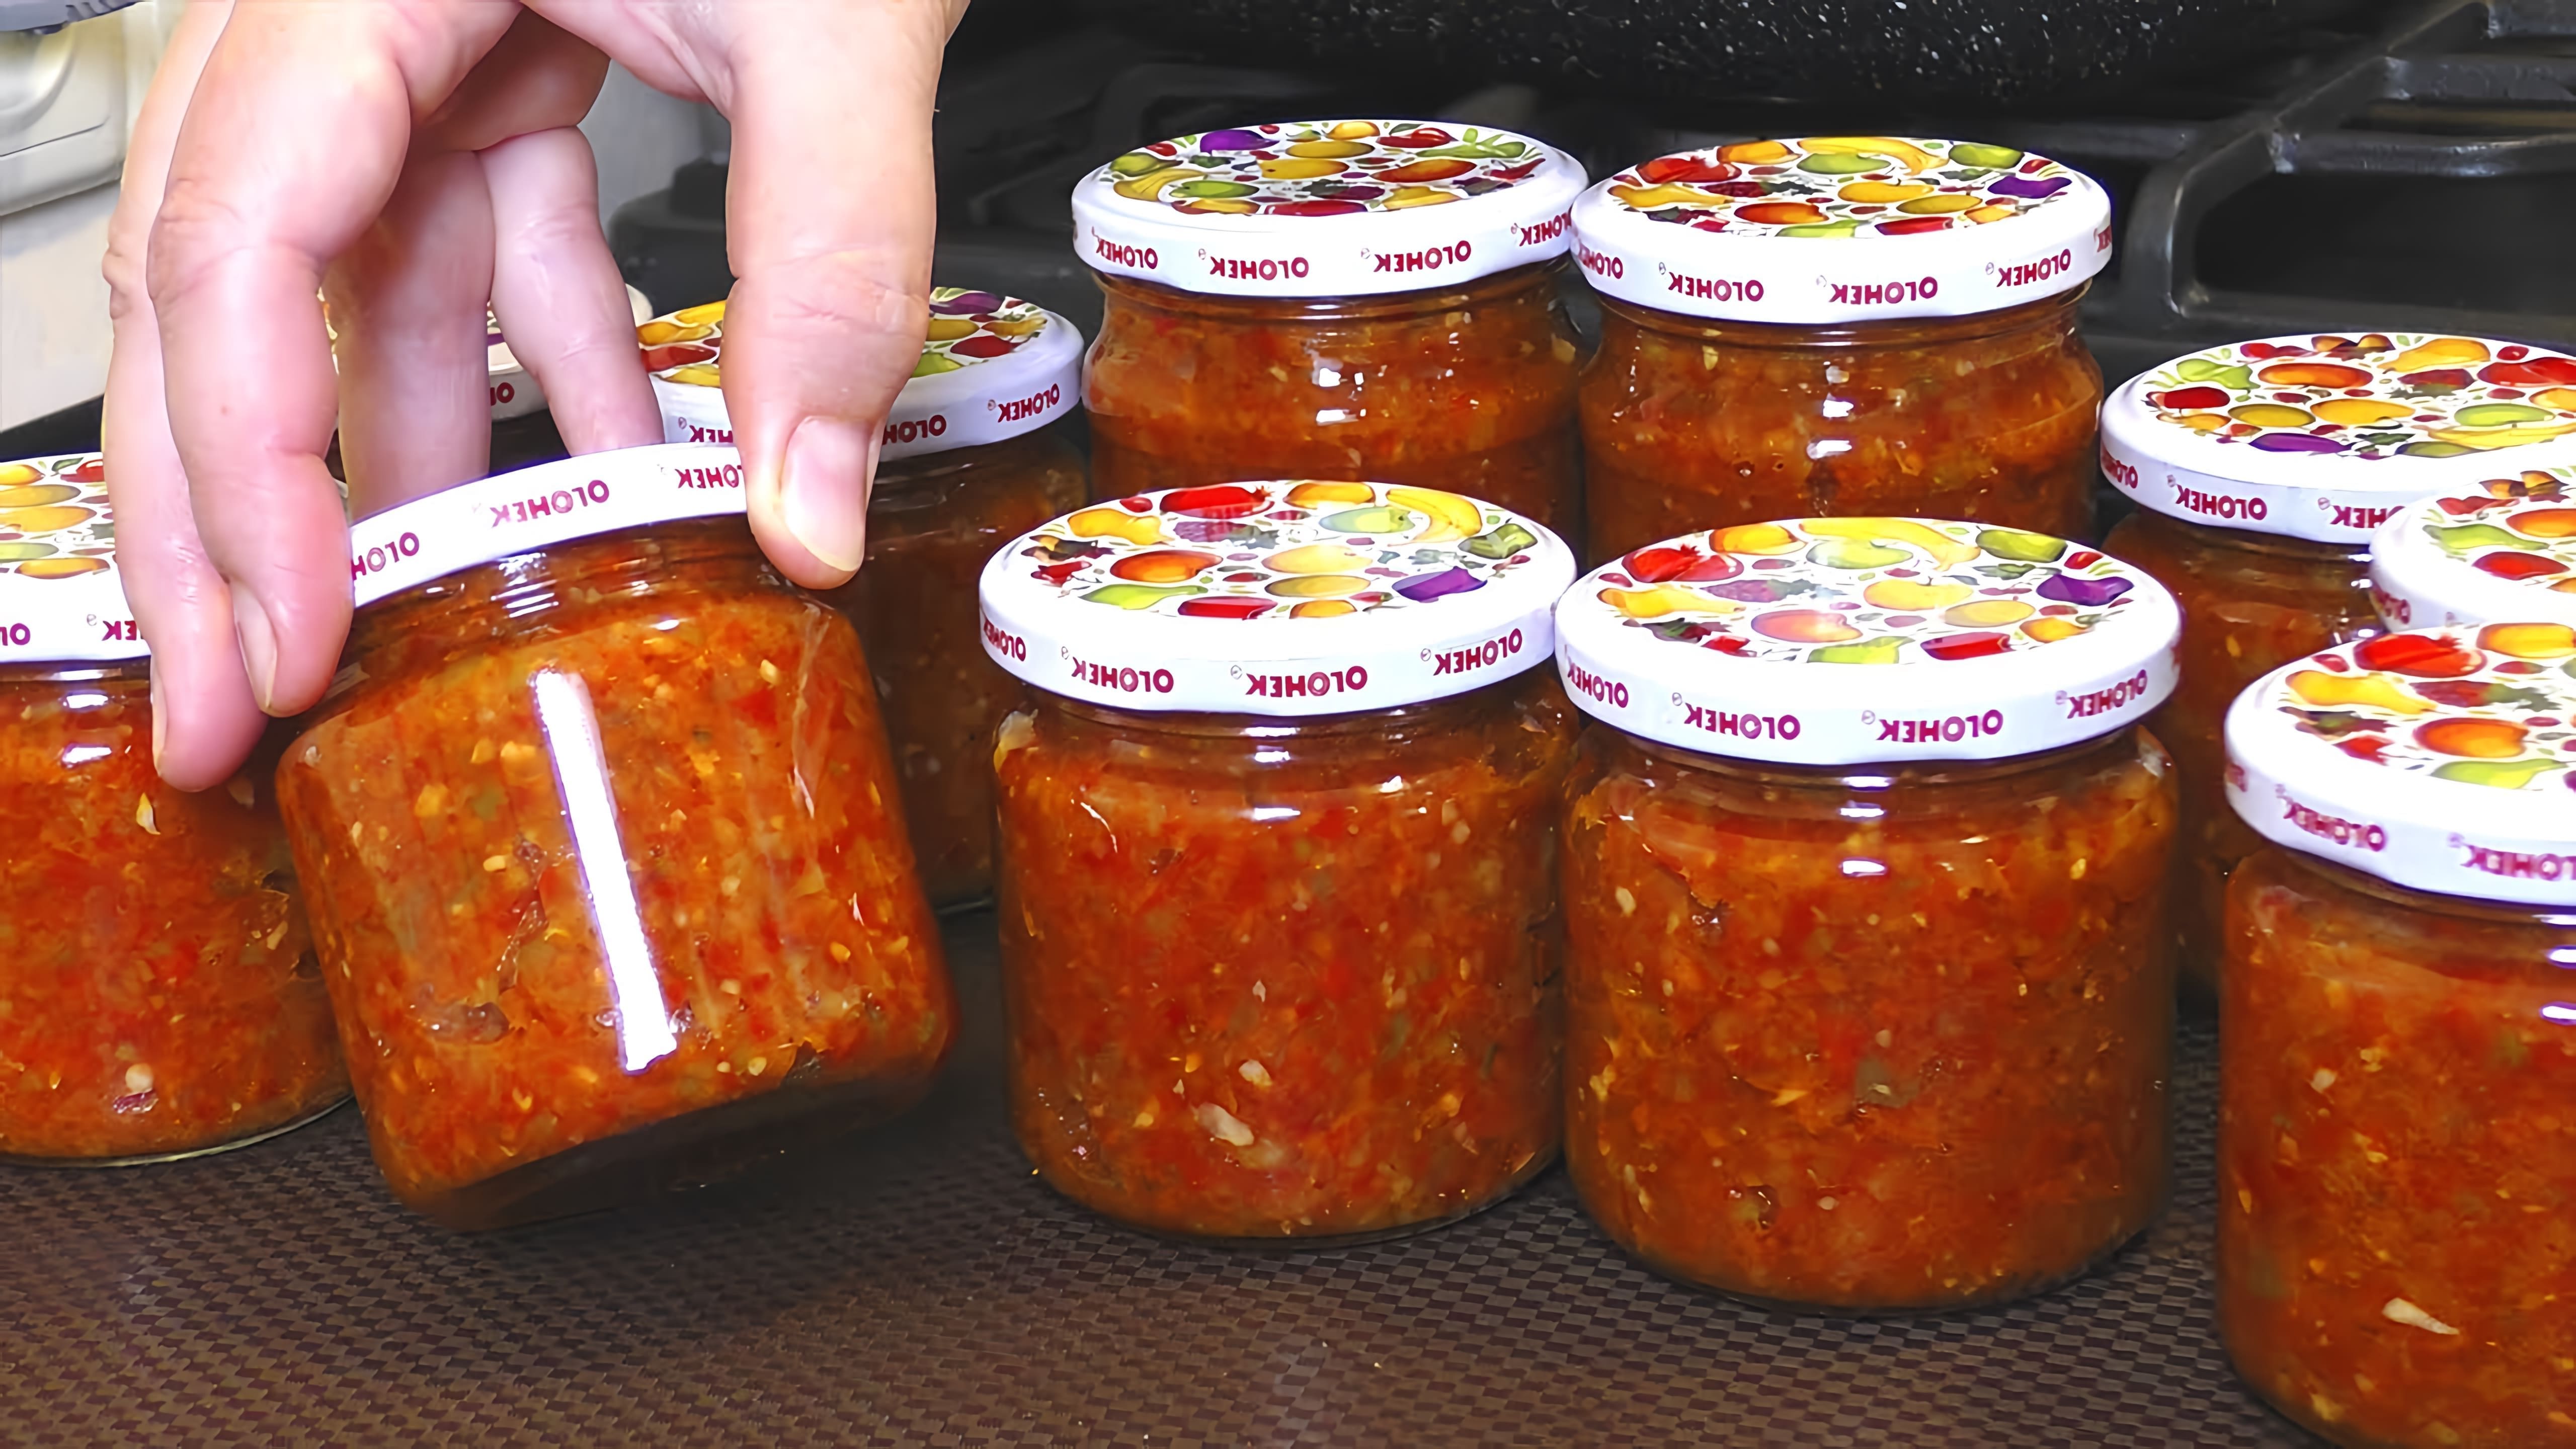 Видео демонстрирует рецепт аджики - грузинской специйной пасты с добавлением баклажанов и зеленых помидоров